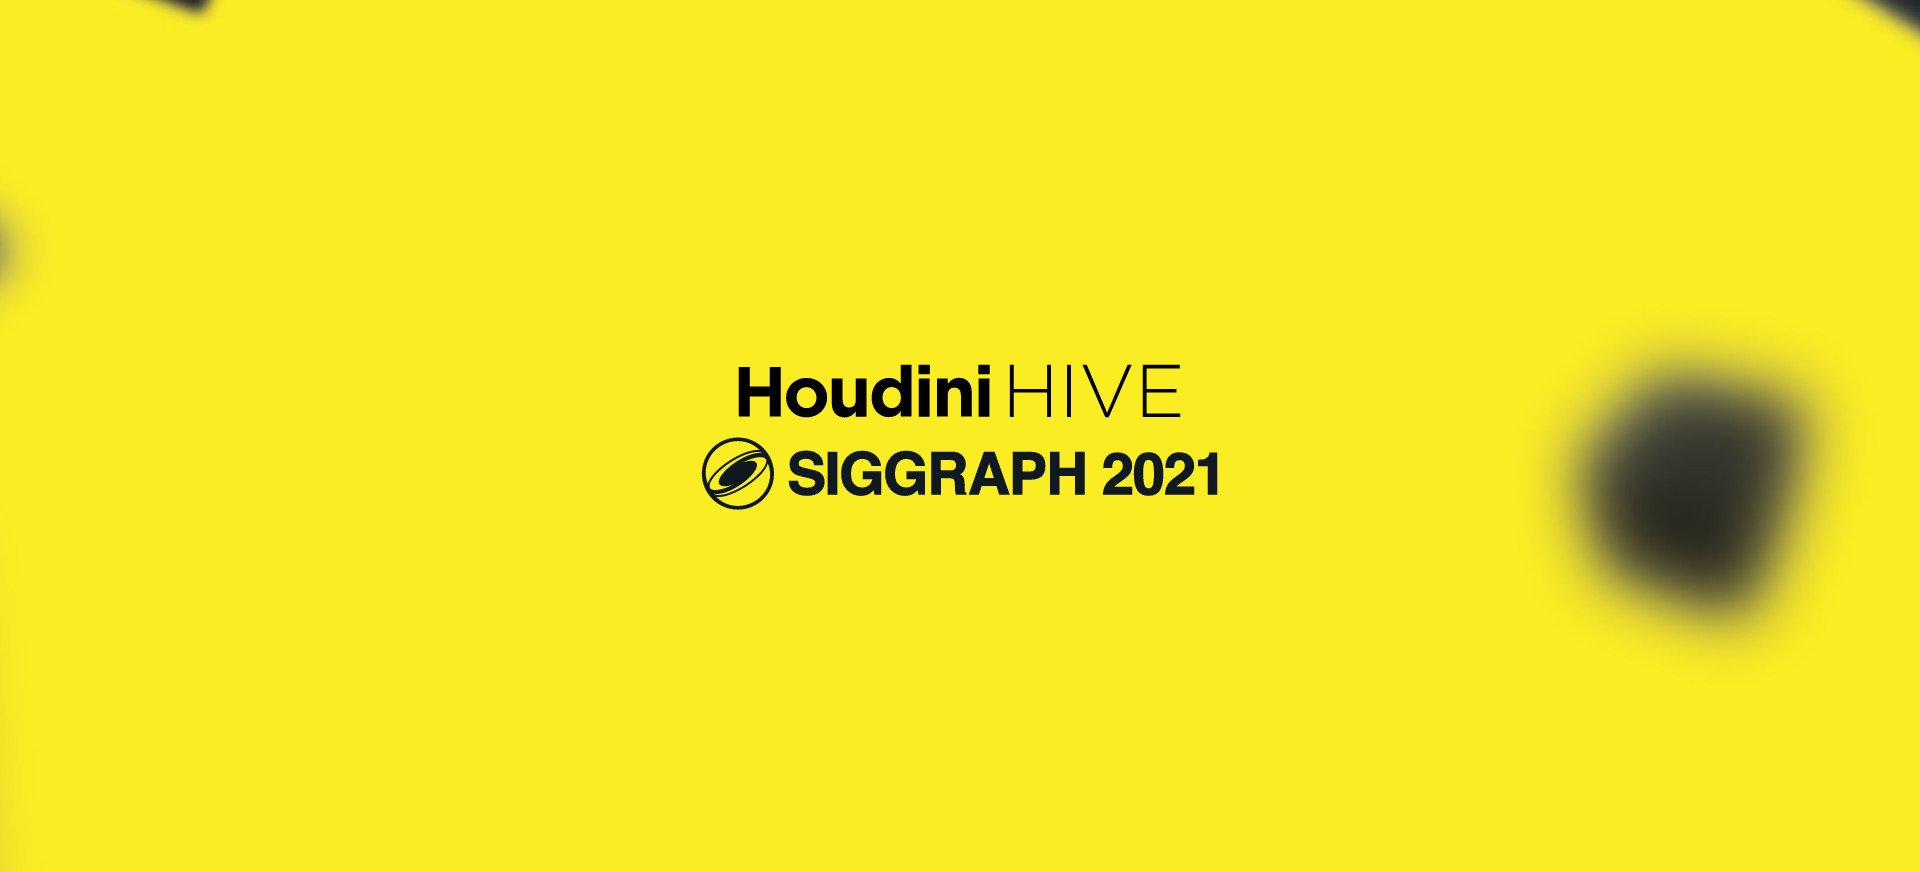 Houdini Hive Siggraph 2021